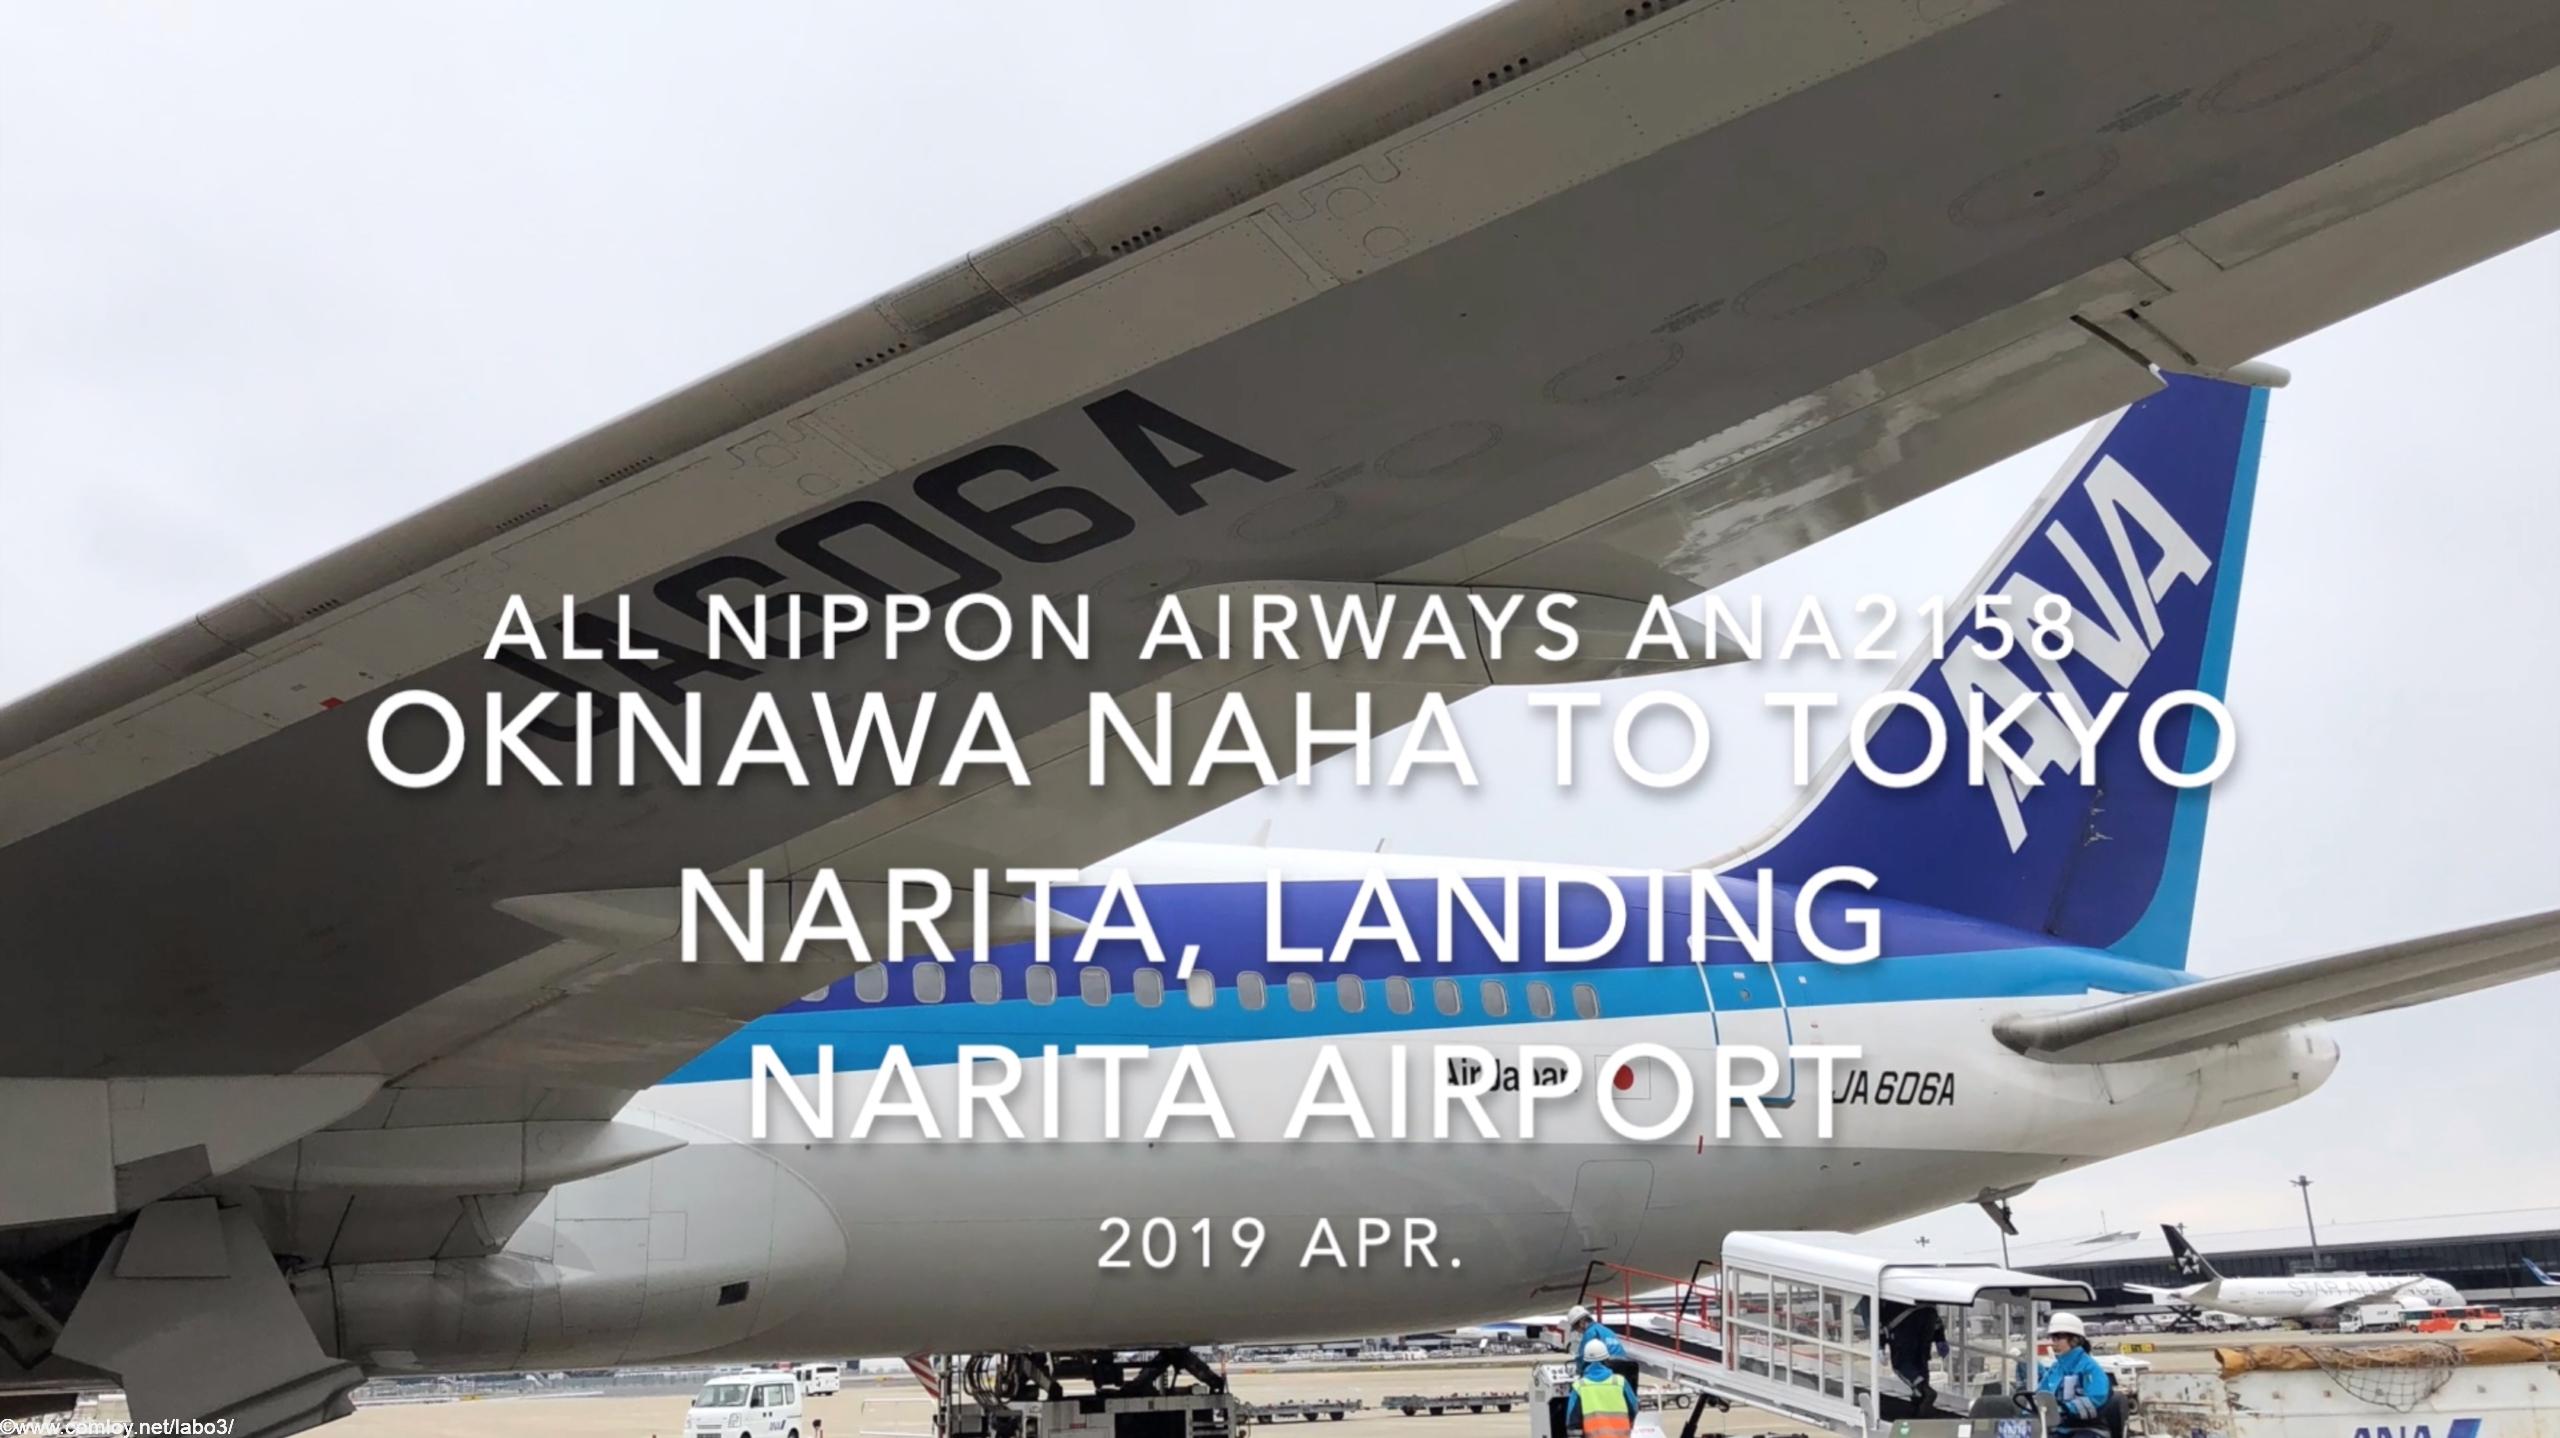 【機内から離着陸映像】2019 Apr All Nippon Airways ANA2158 OKINAWA NAHA to TOKYO NARITA, Landing NARITA Airport